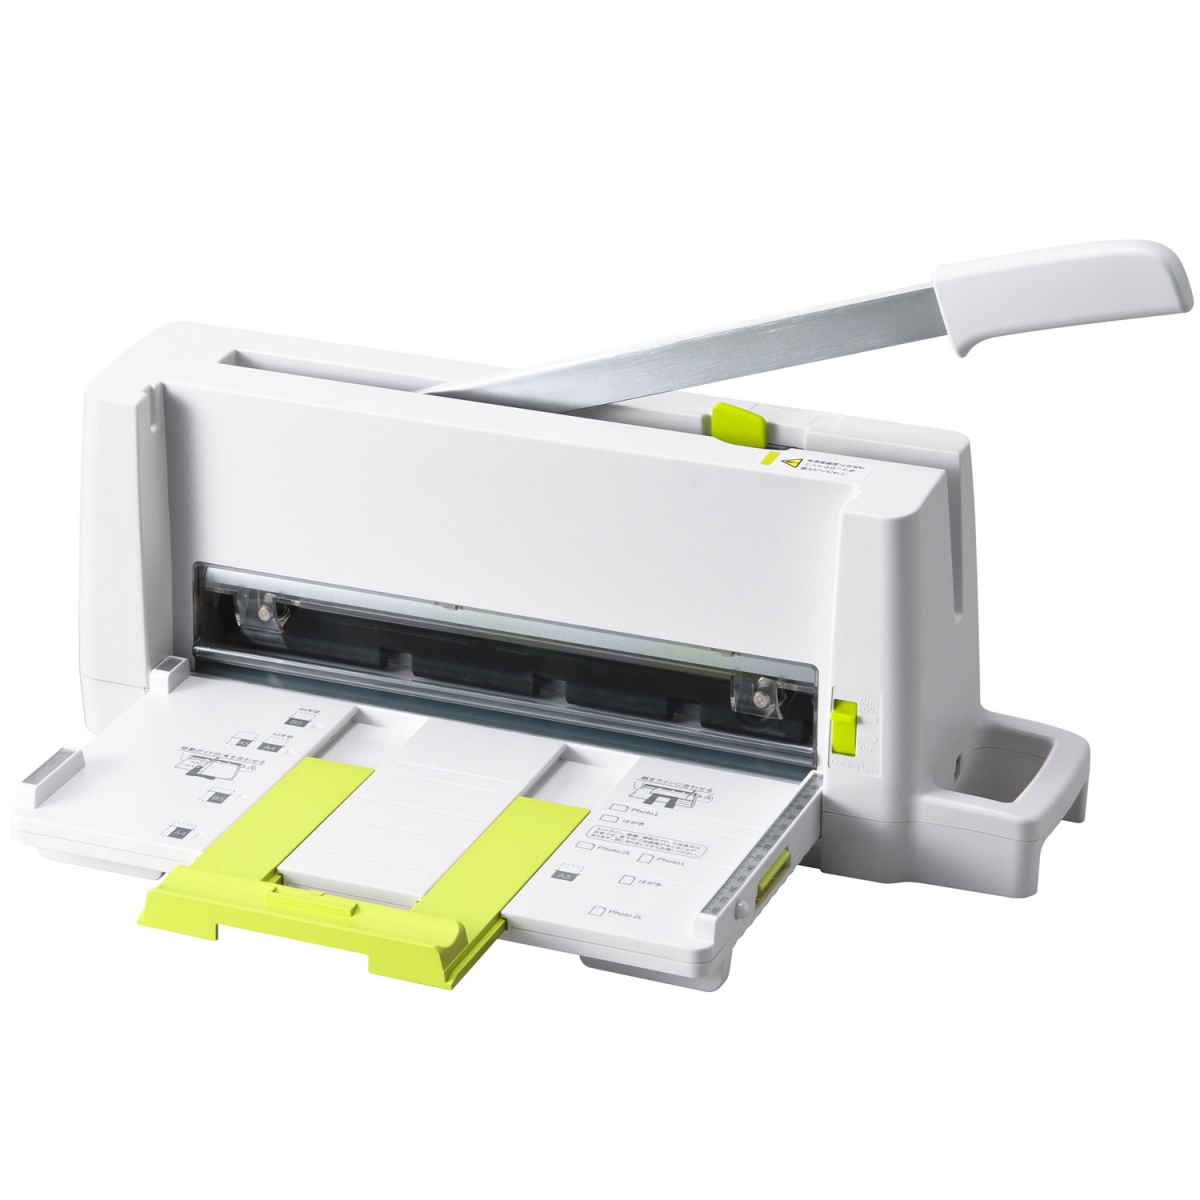 PLUS PK-213-TW 攜帶式安全裁紙機 A4裁刀 切紙刀 切紙機 一次可裁約60張紙